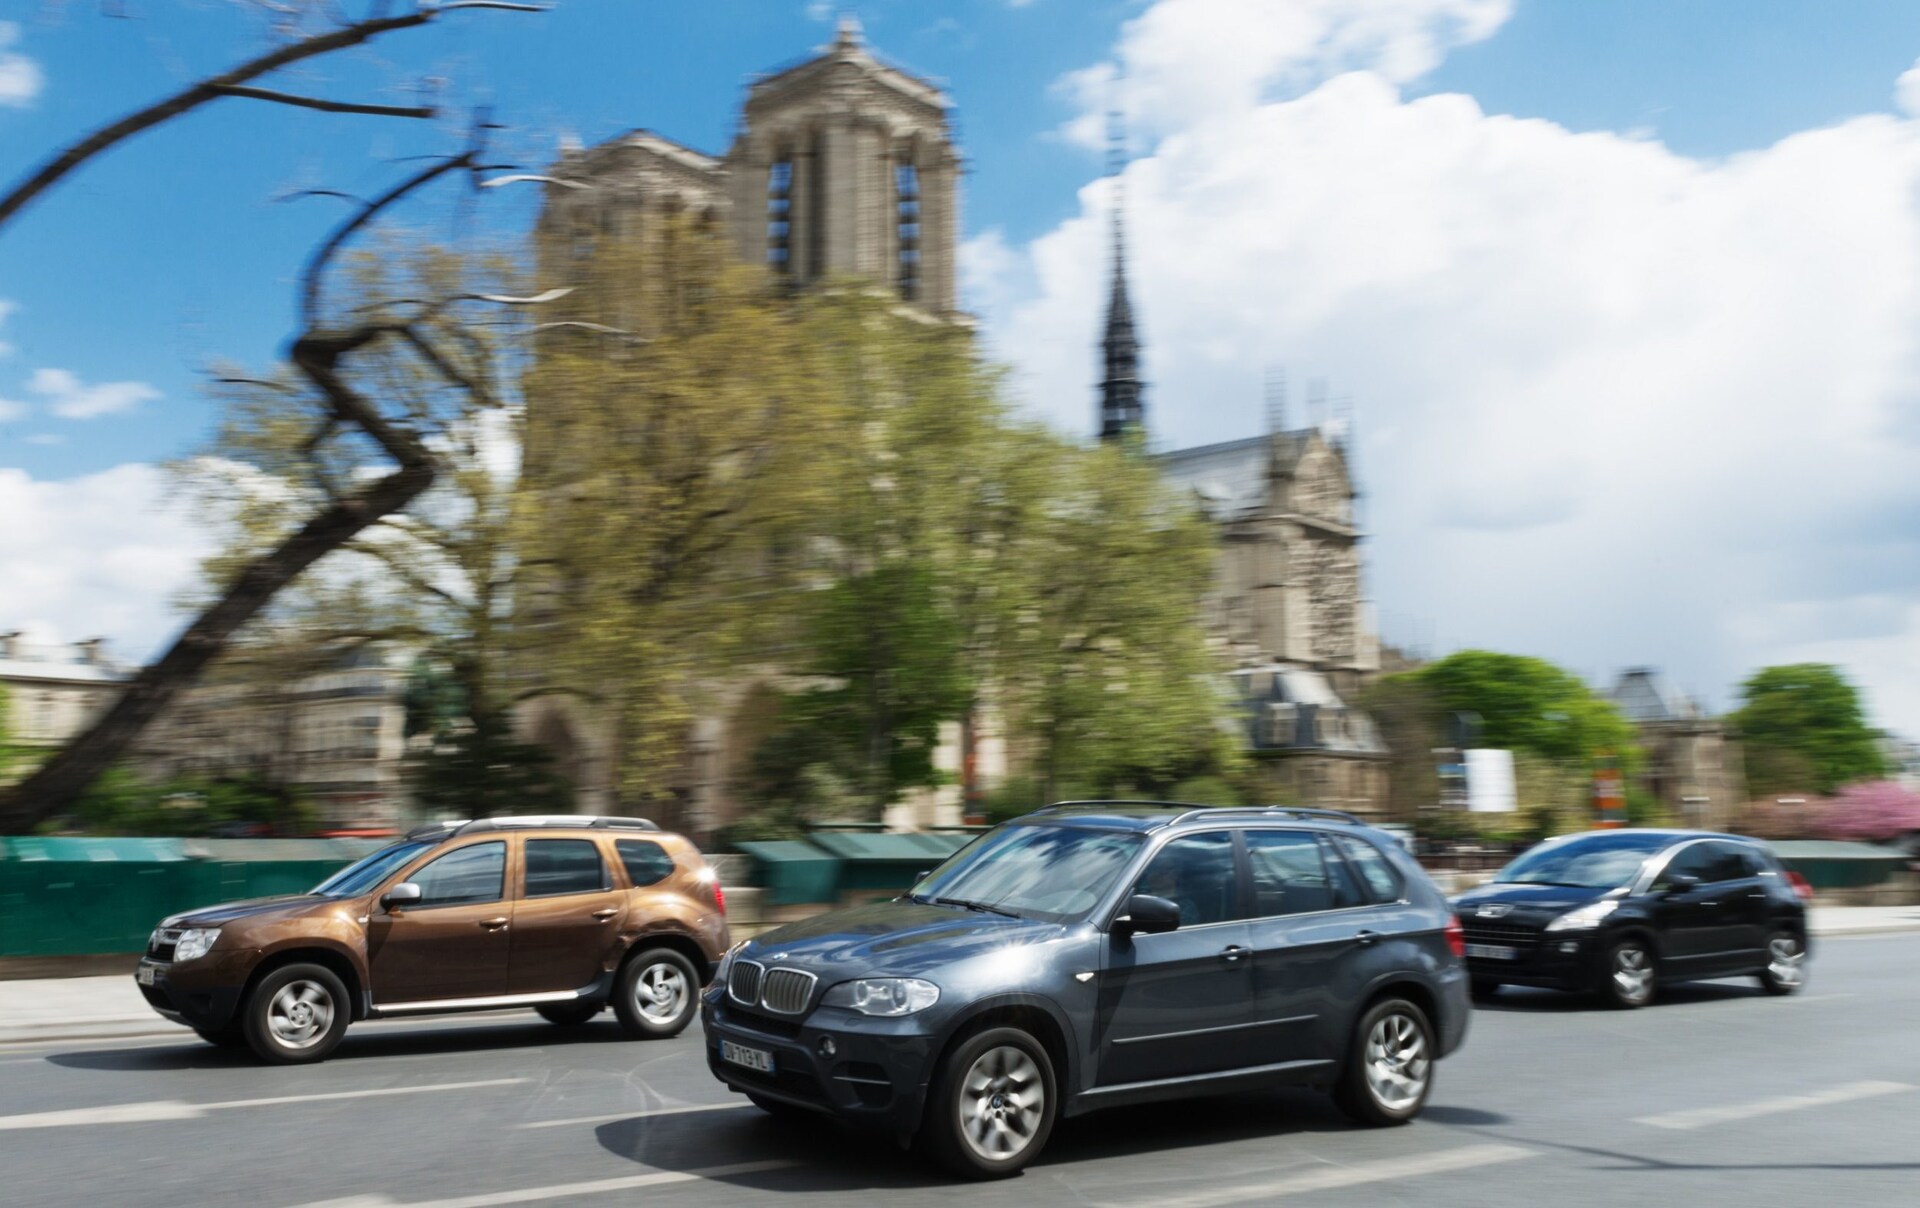 Nhà chức trách Paris đề xuất, các dòng xe SUV sẽ phải trả phí đậu xe cao hơn so với ô tô cỡ nhỏ - Ảnh iStockphoto